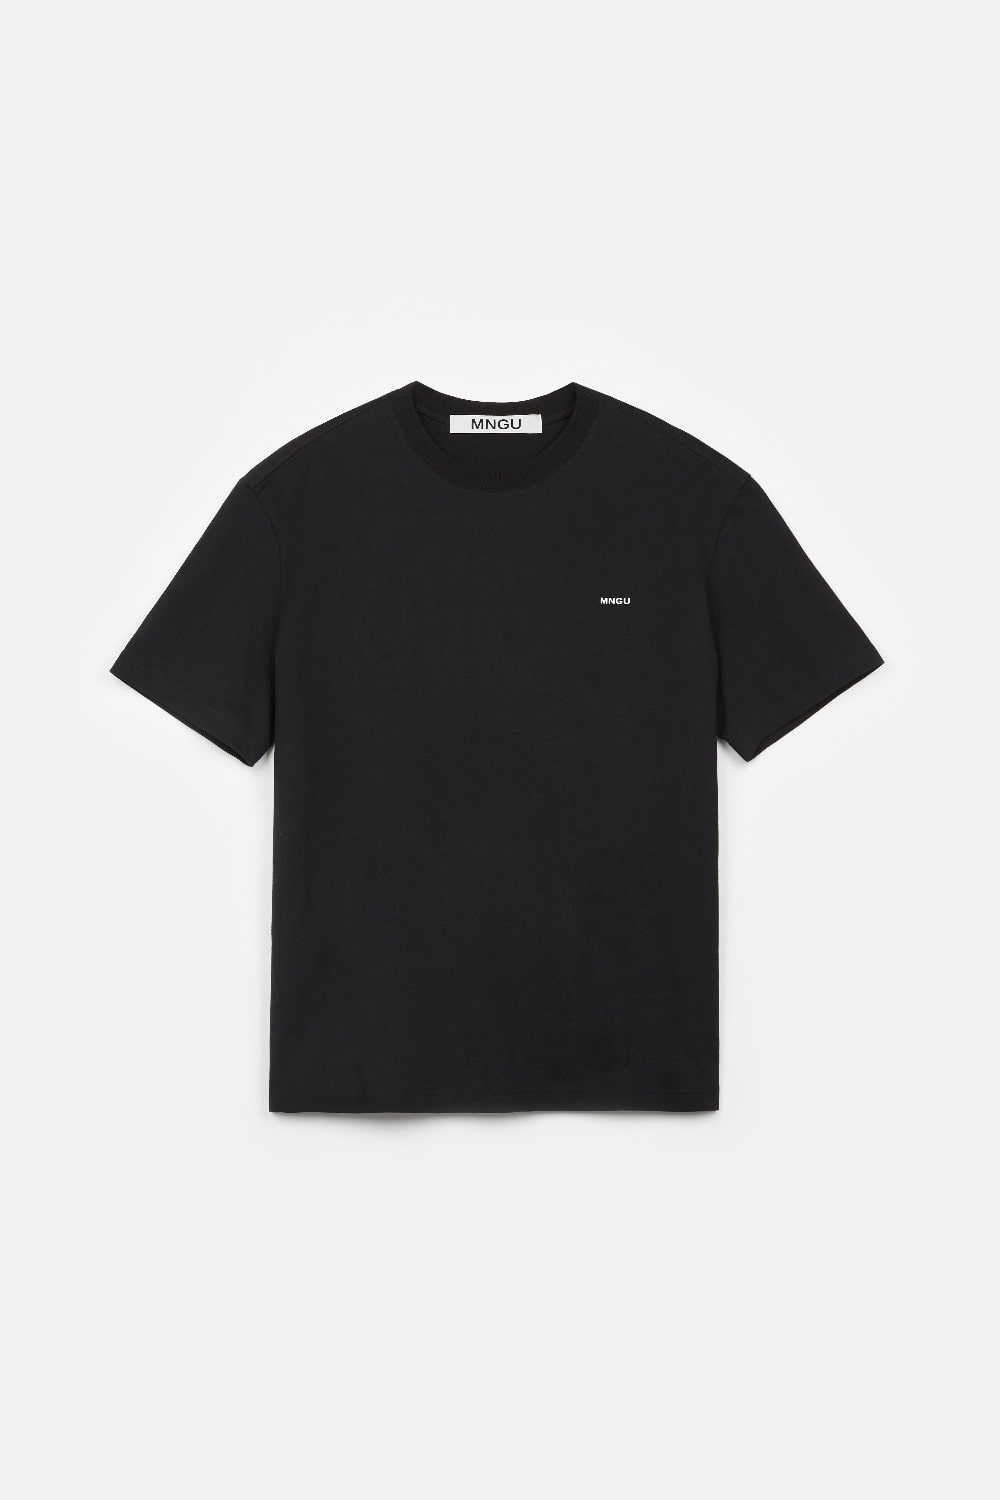 [-20%] 스탠다드 로고 티셔츠 IN 블랙